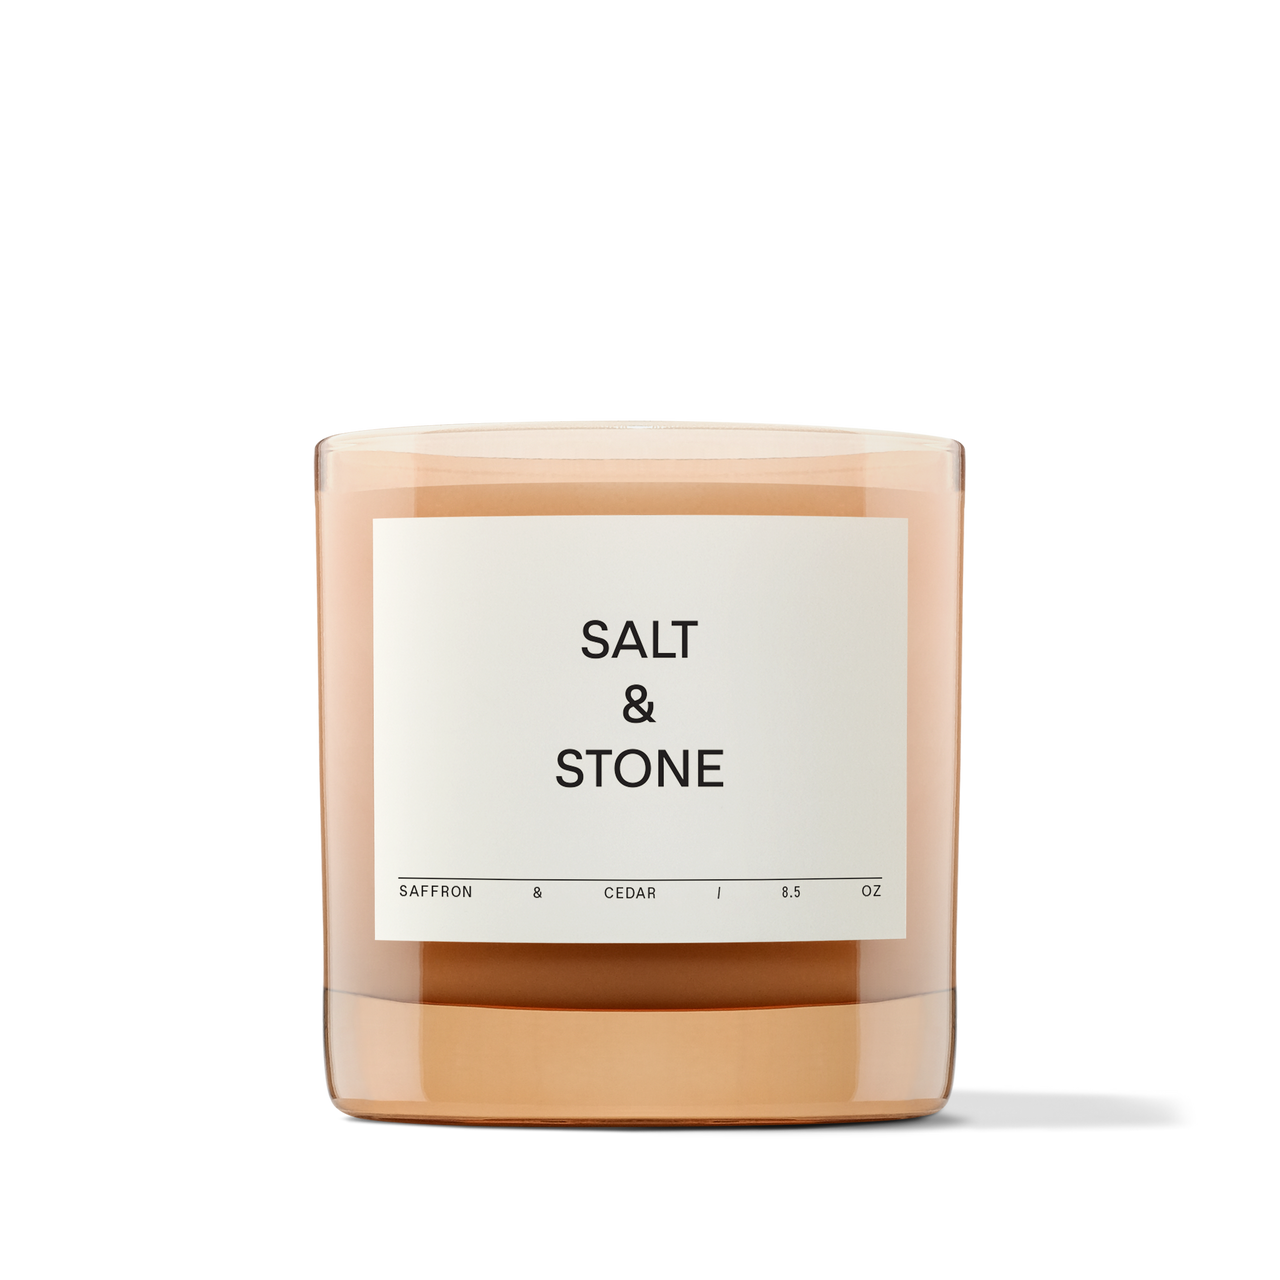 SALT AND STONE CANDLE - SAFFRON & CEDAR